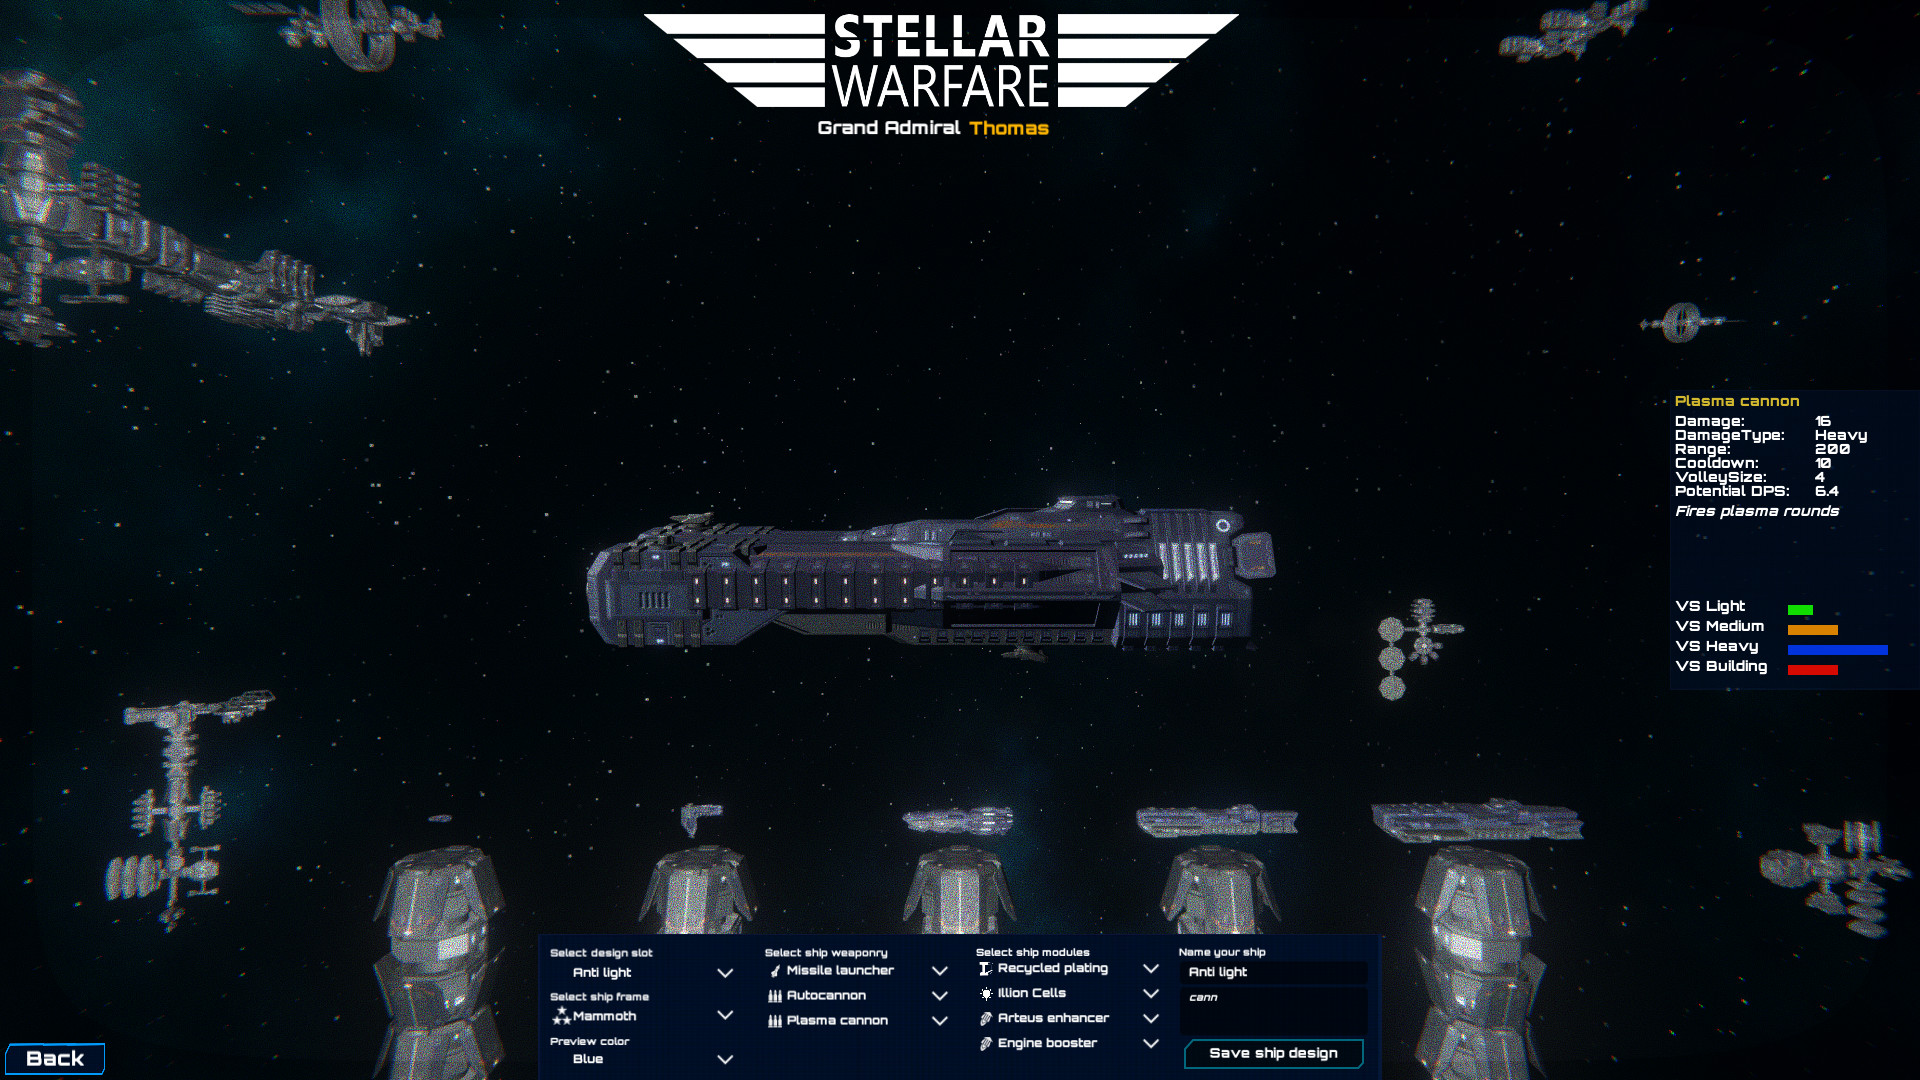 Stellar Warfare Free Download